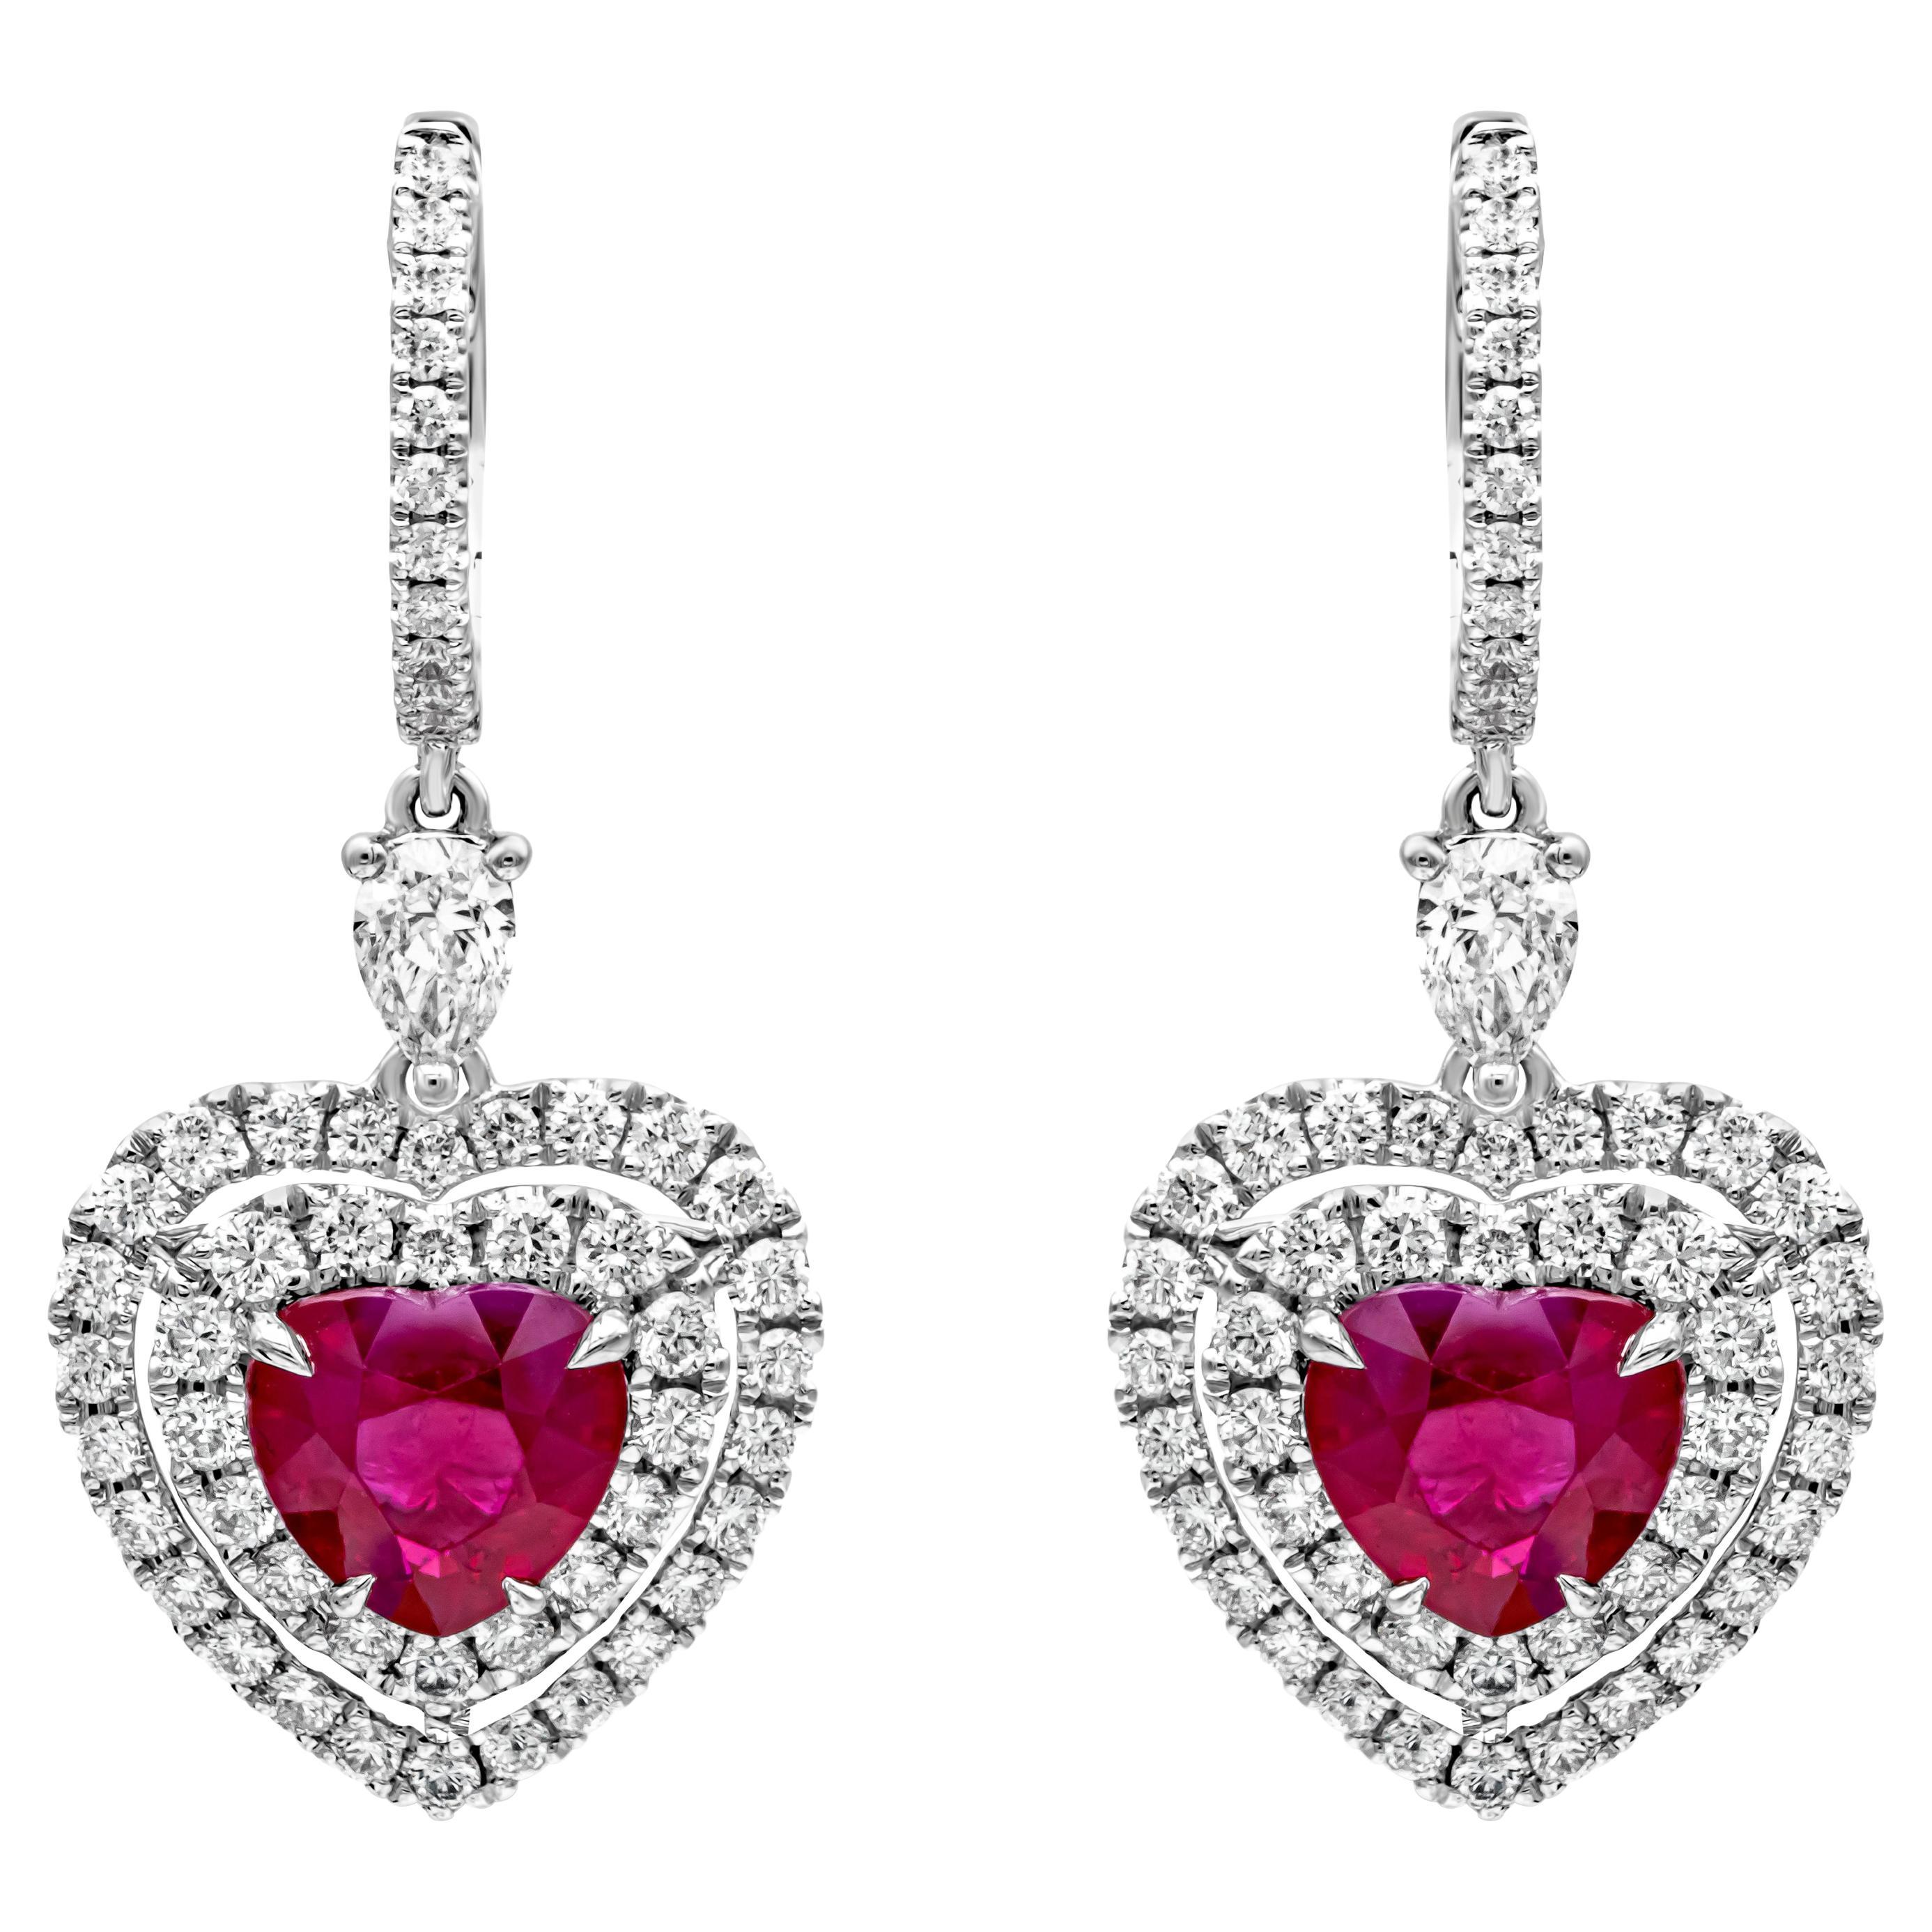 Roman Malakov 3.67 Carats Total Heart Shape Ruby & Diamond Halo Dangle Earrings